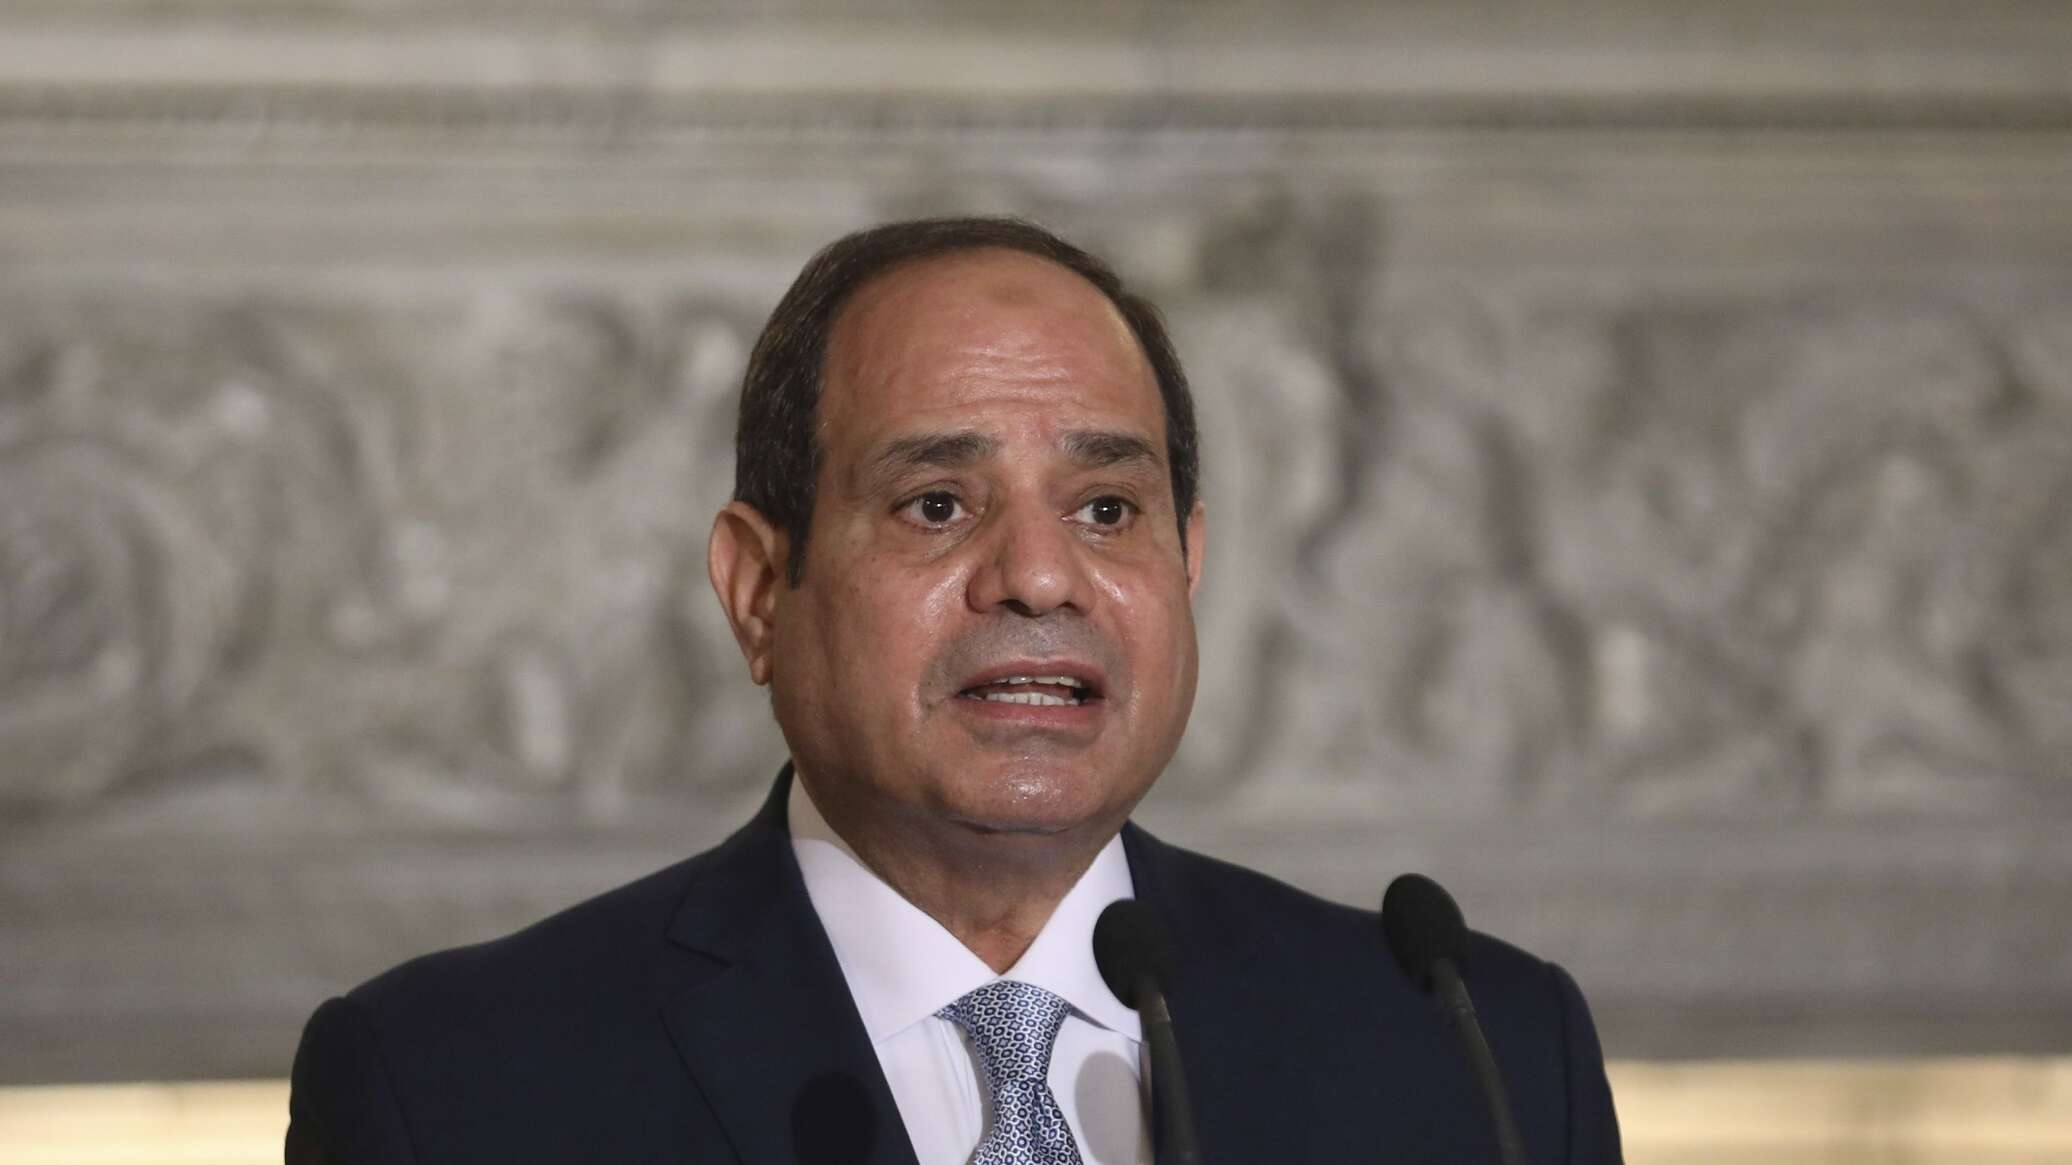 مصر تحذر إسرائيل وتطالب بتدخل دولي عاجل لمنع "تطور خطير"